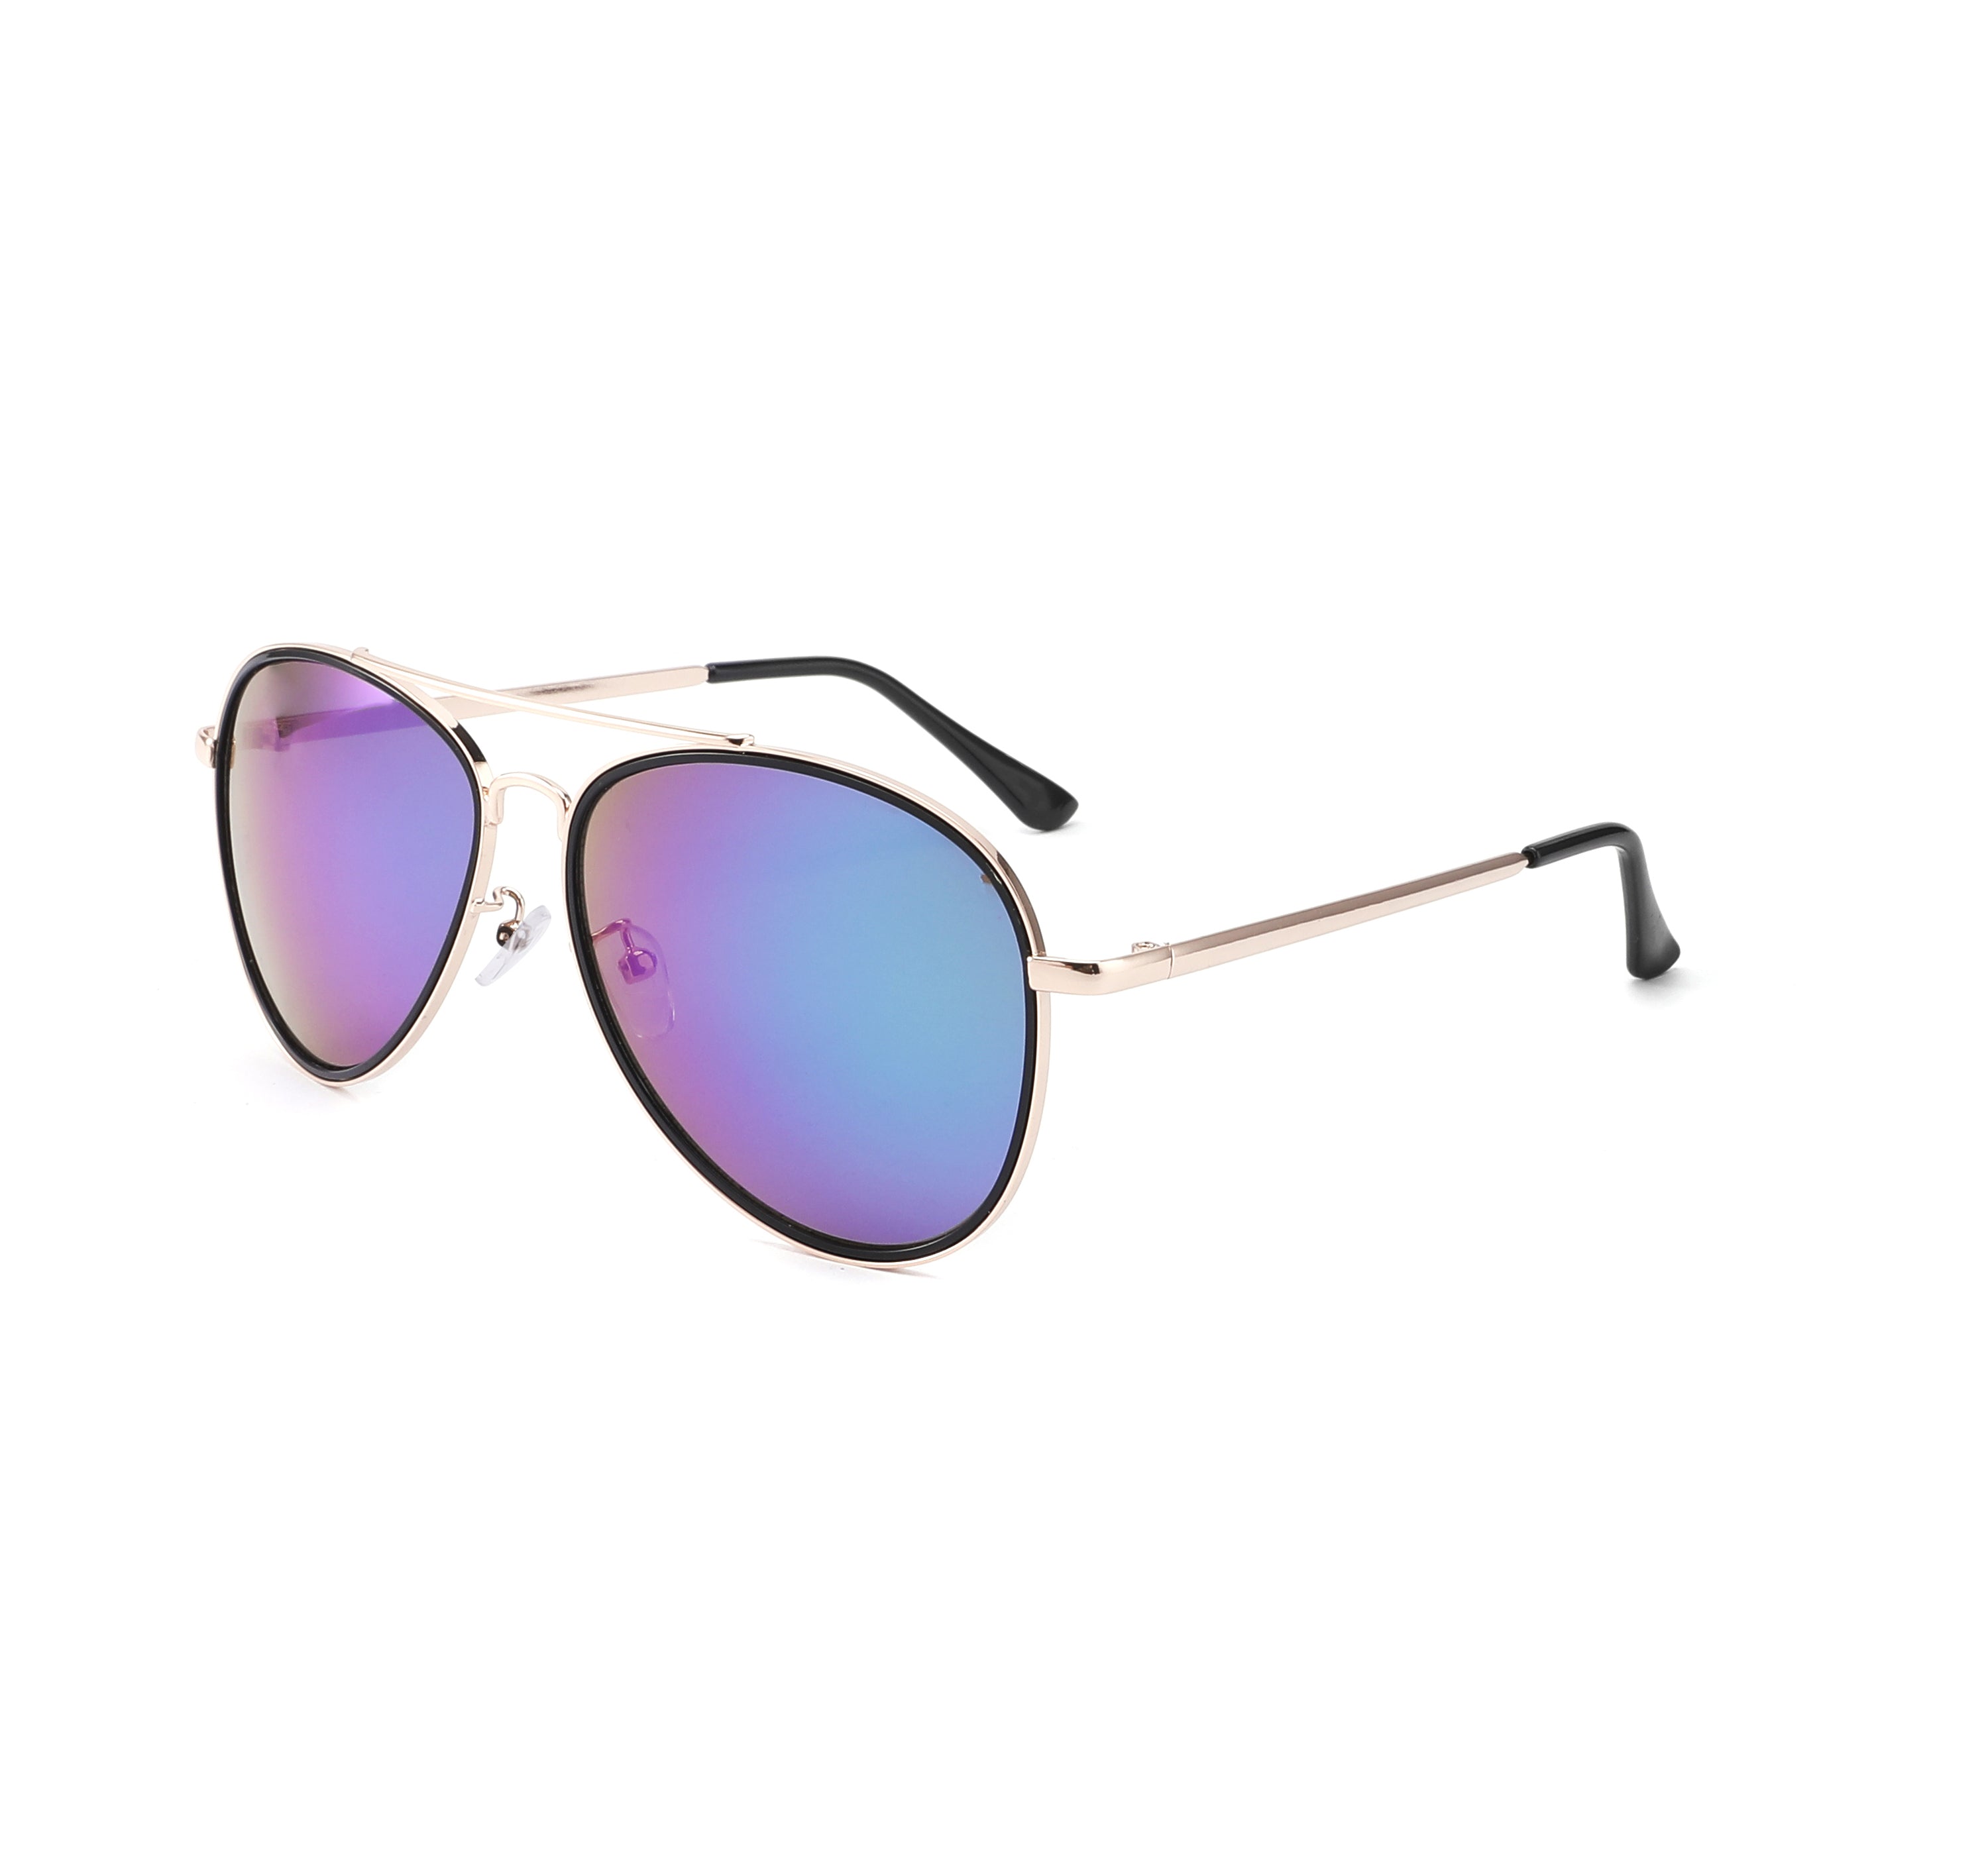 Sunglasses: Bicolore